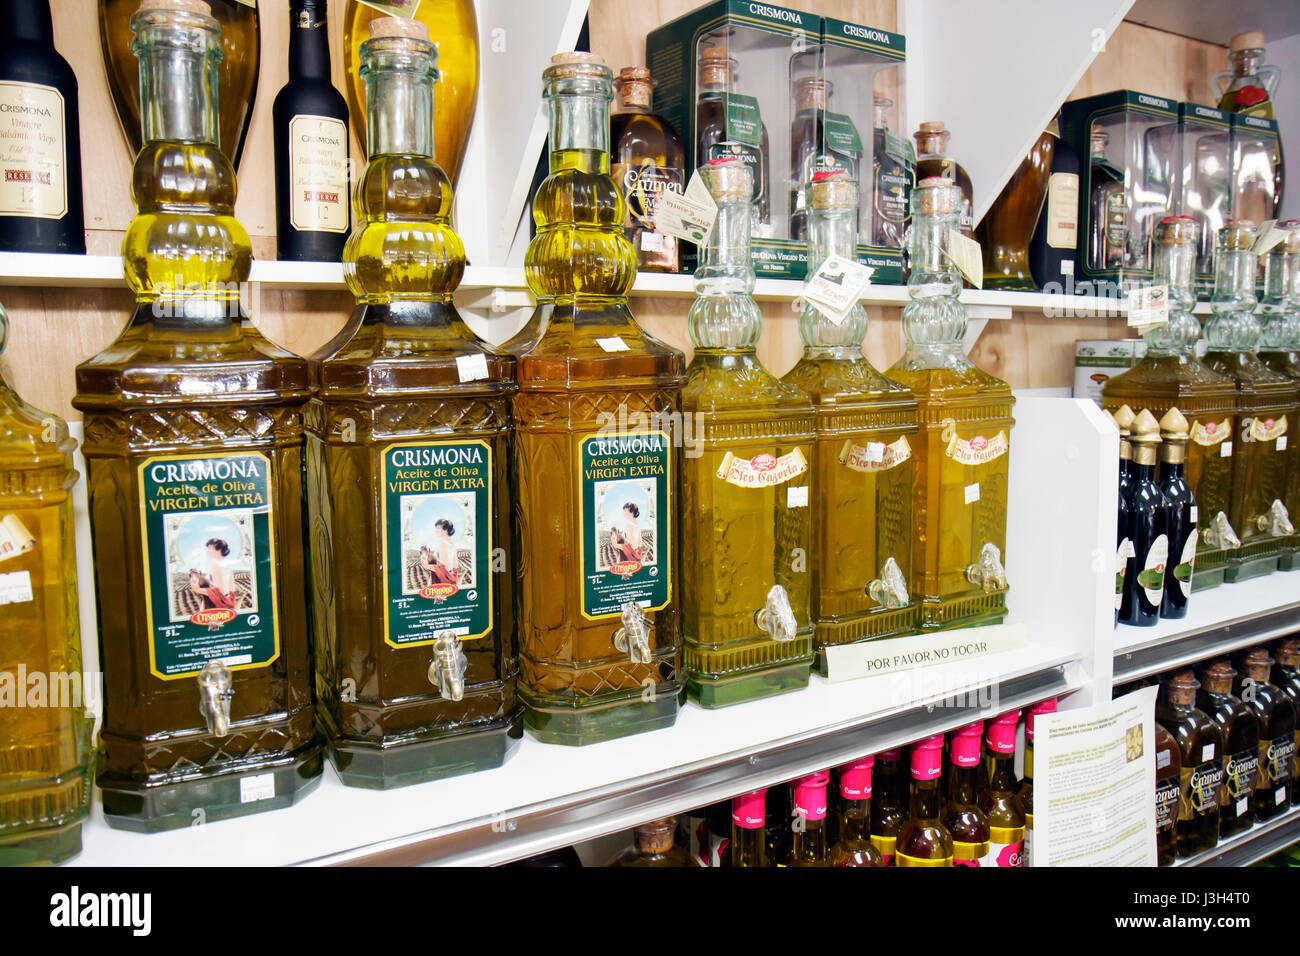 Miami Florida, Delicias de Espana spanisches Restaurant Gourmet, importierte Olivenölflaschen Regal Regale Produkte Verkauf anzeigen, Stockfoto